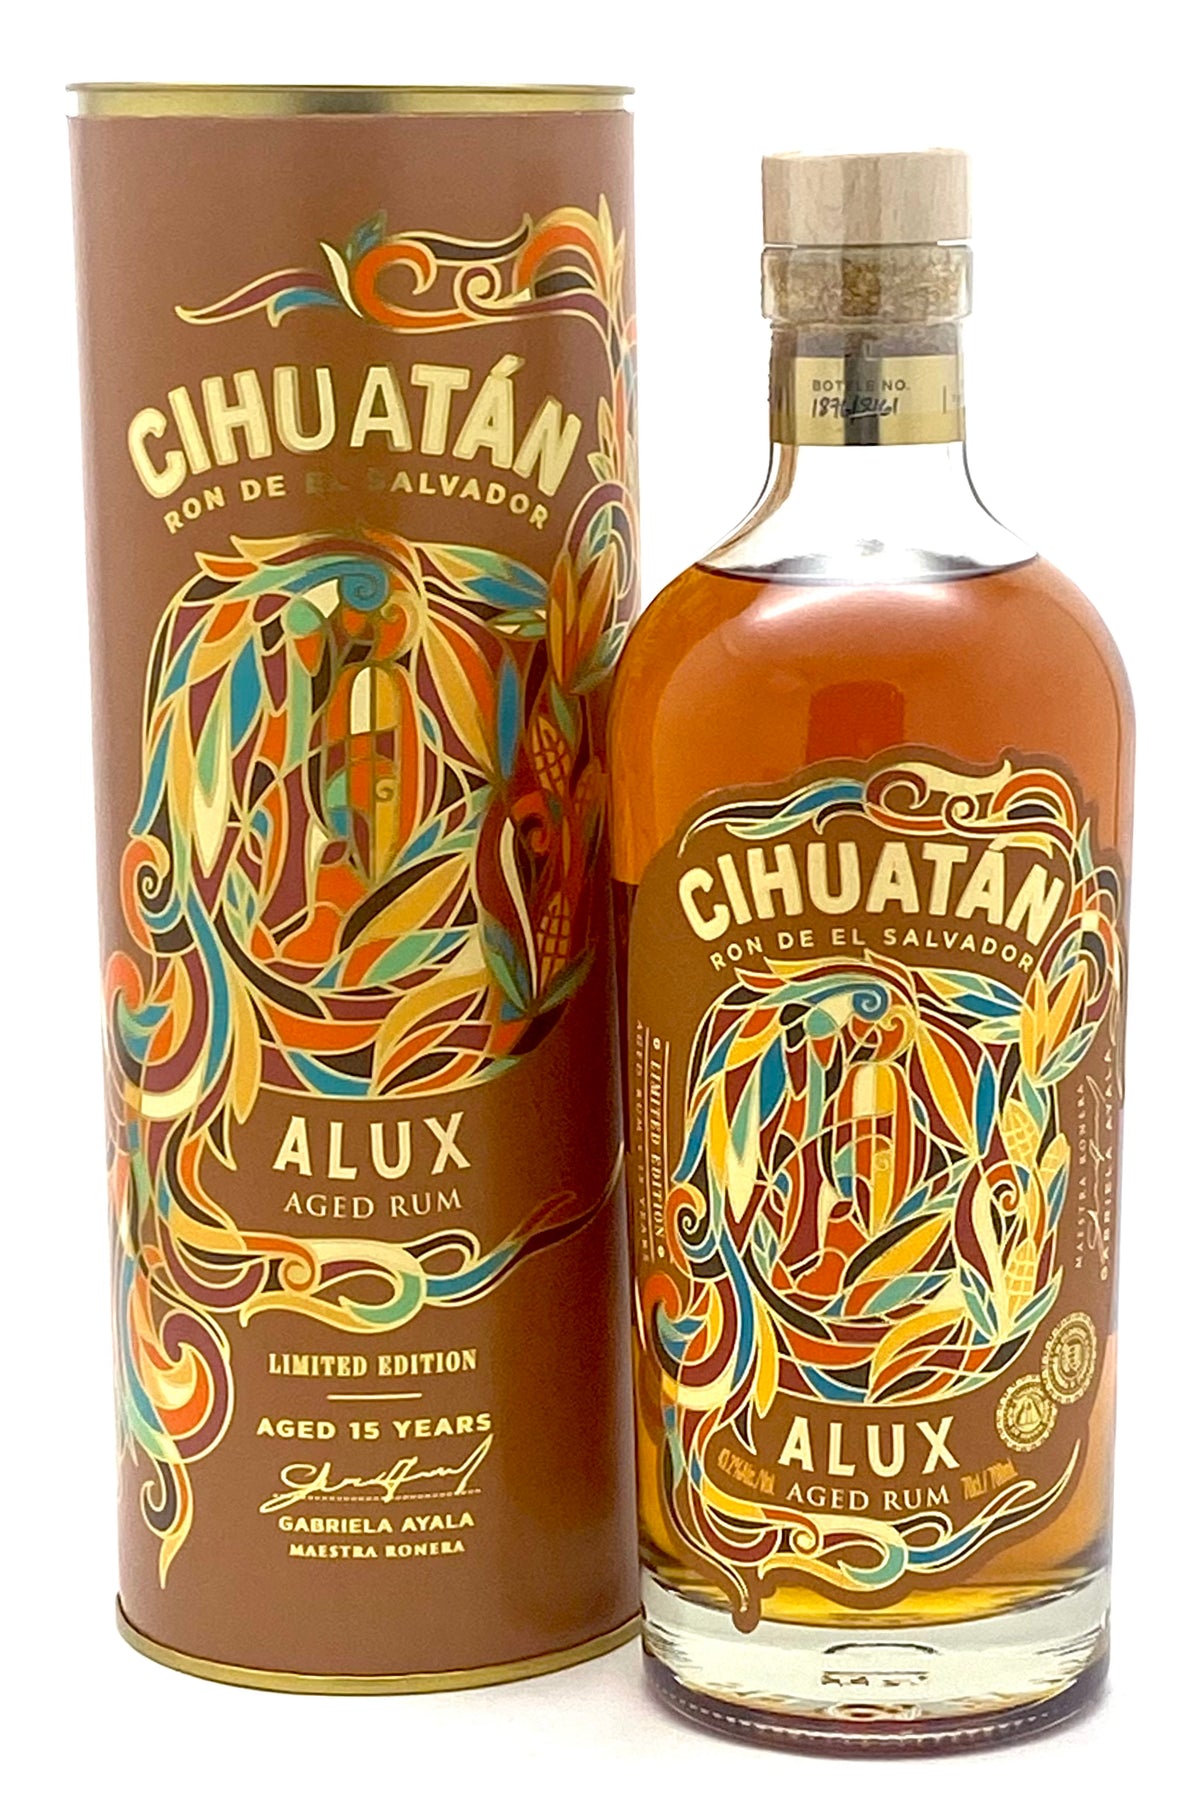 Ron de El Salvador Cihuatan Alux 15 Years Old Single Barrel Rum